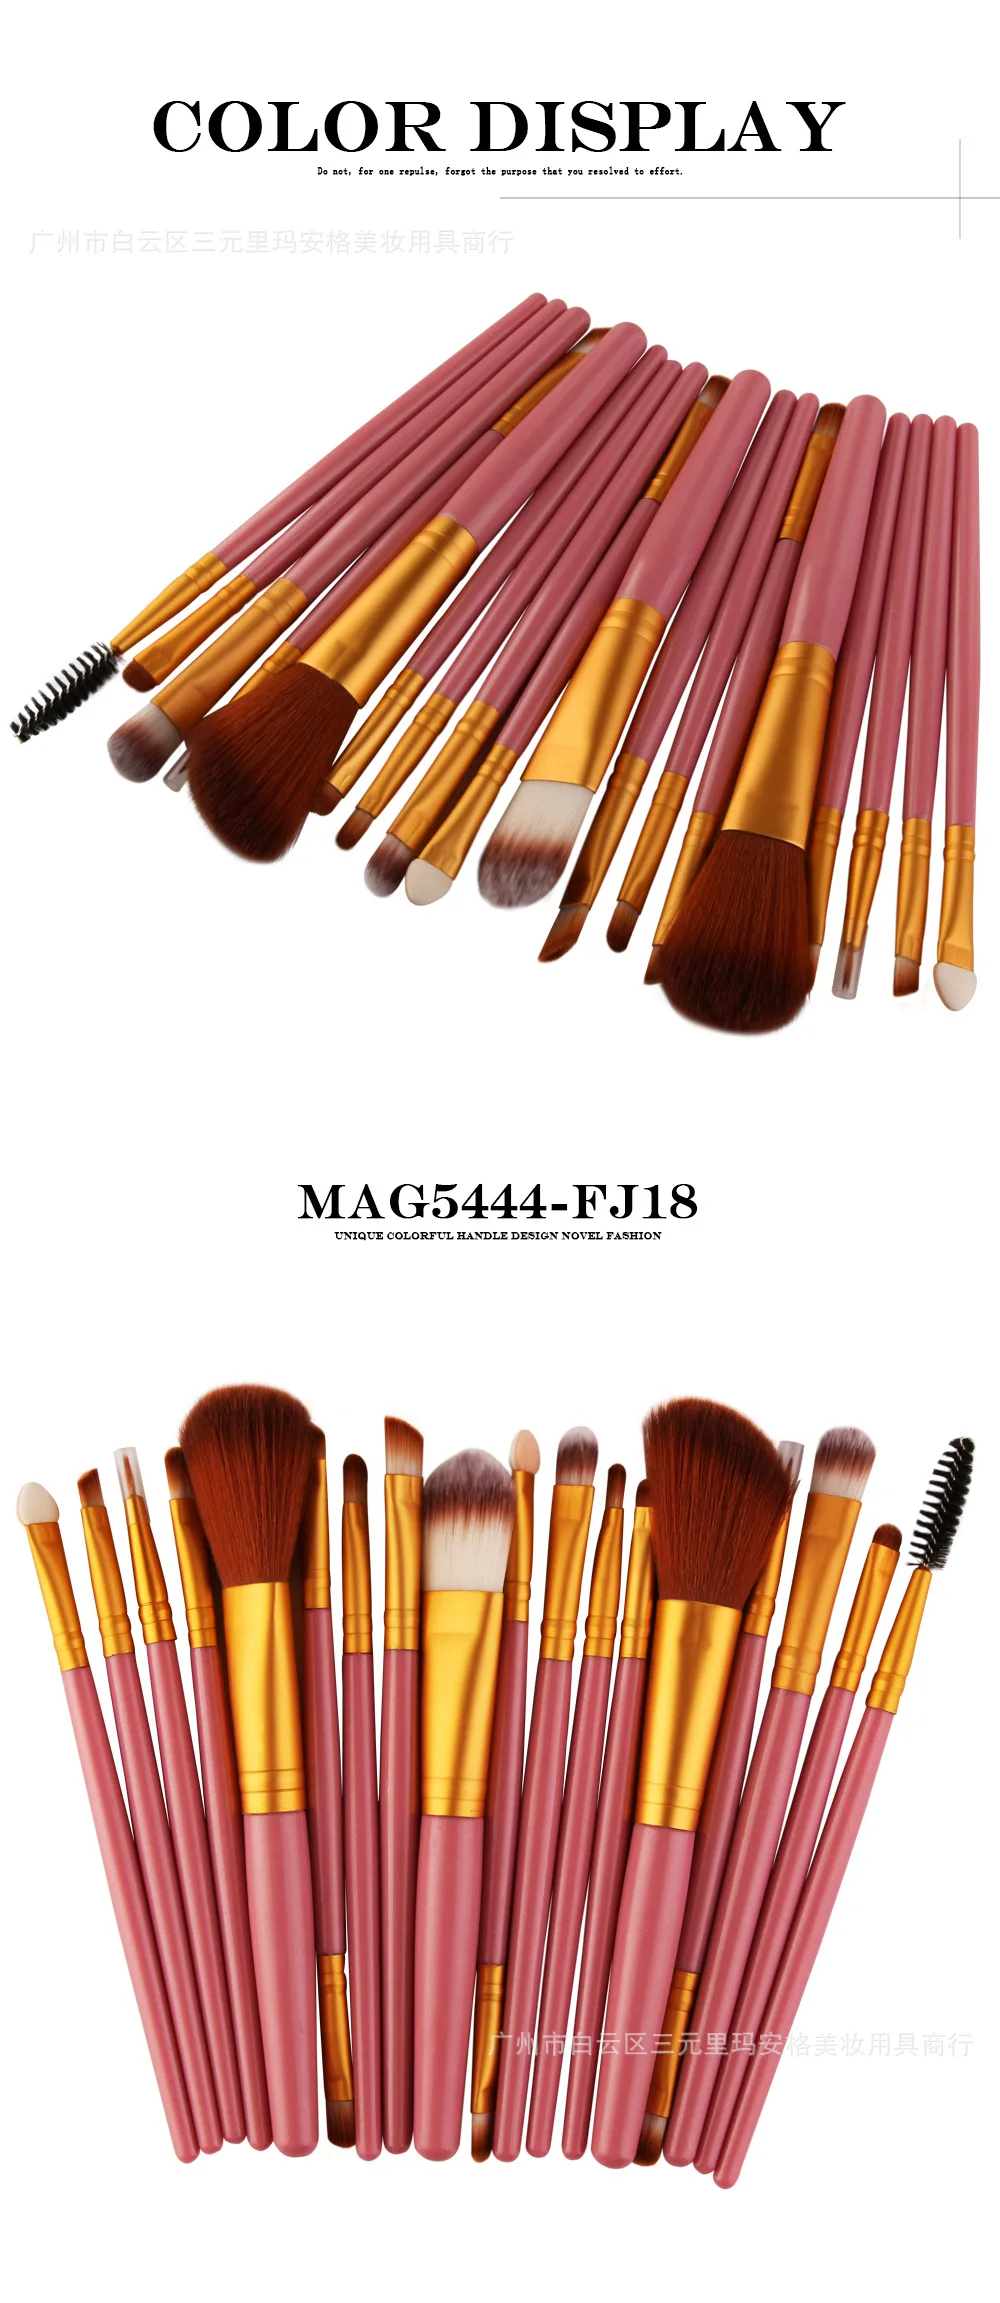 Поперечная граница для Maange 18 набор кистей для макияжа инструмент для красоты AliExpress EBay